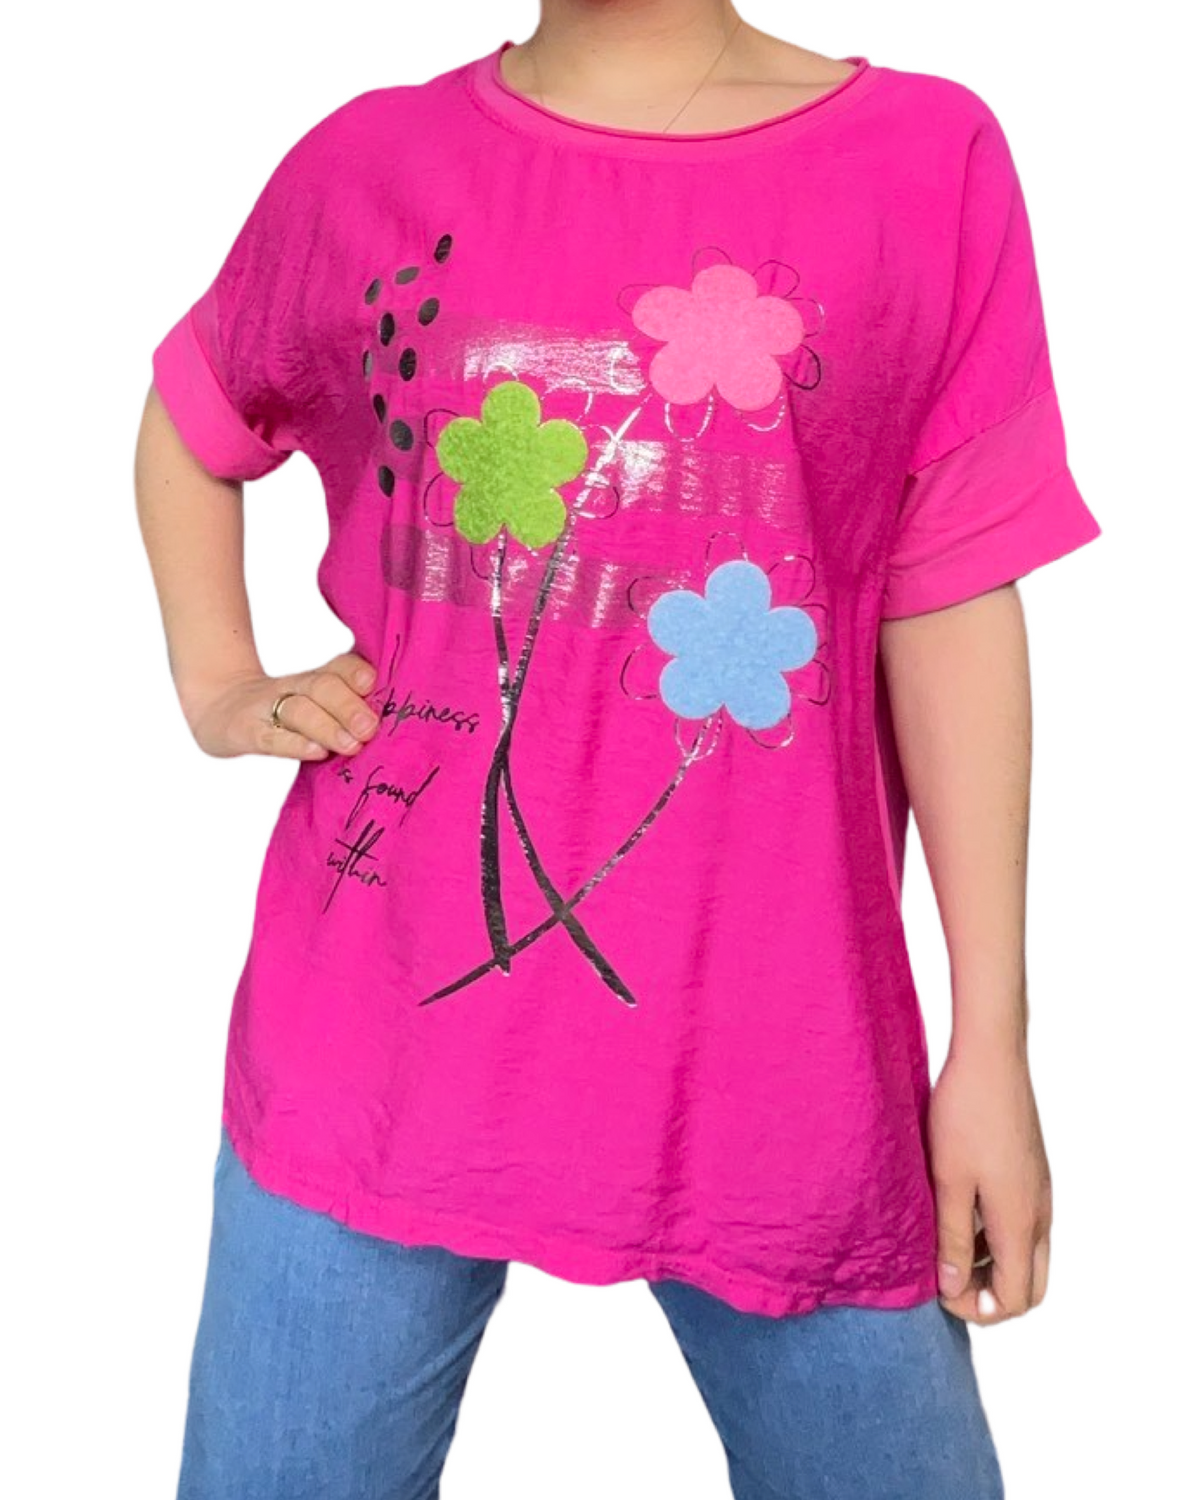 T-shirt fuchsia avec imprimé de fleurs texturées.